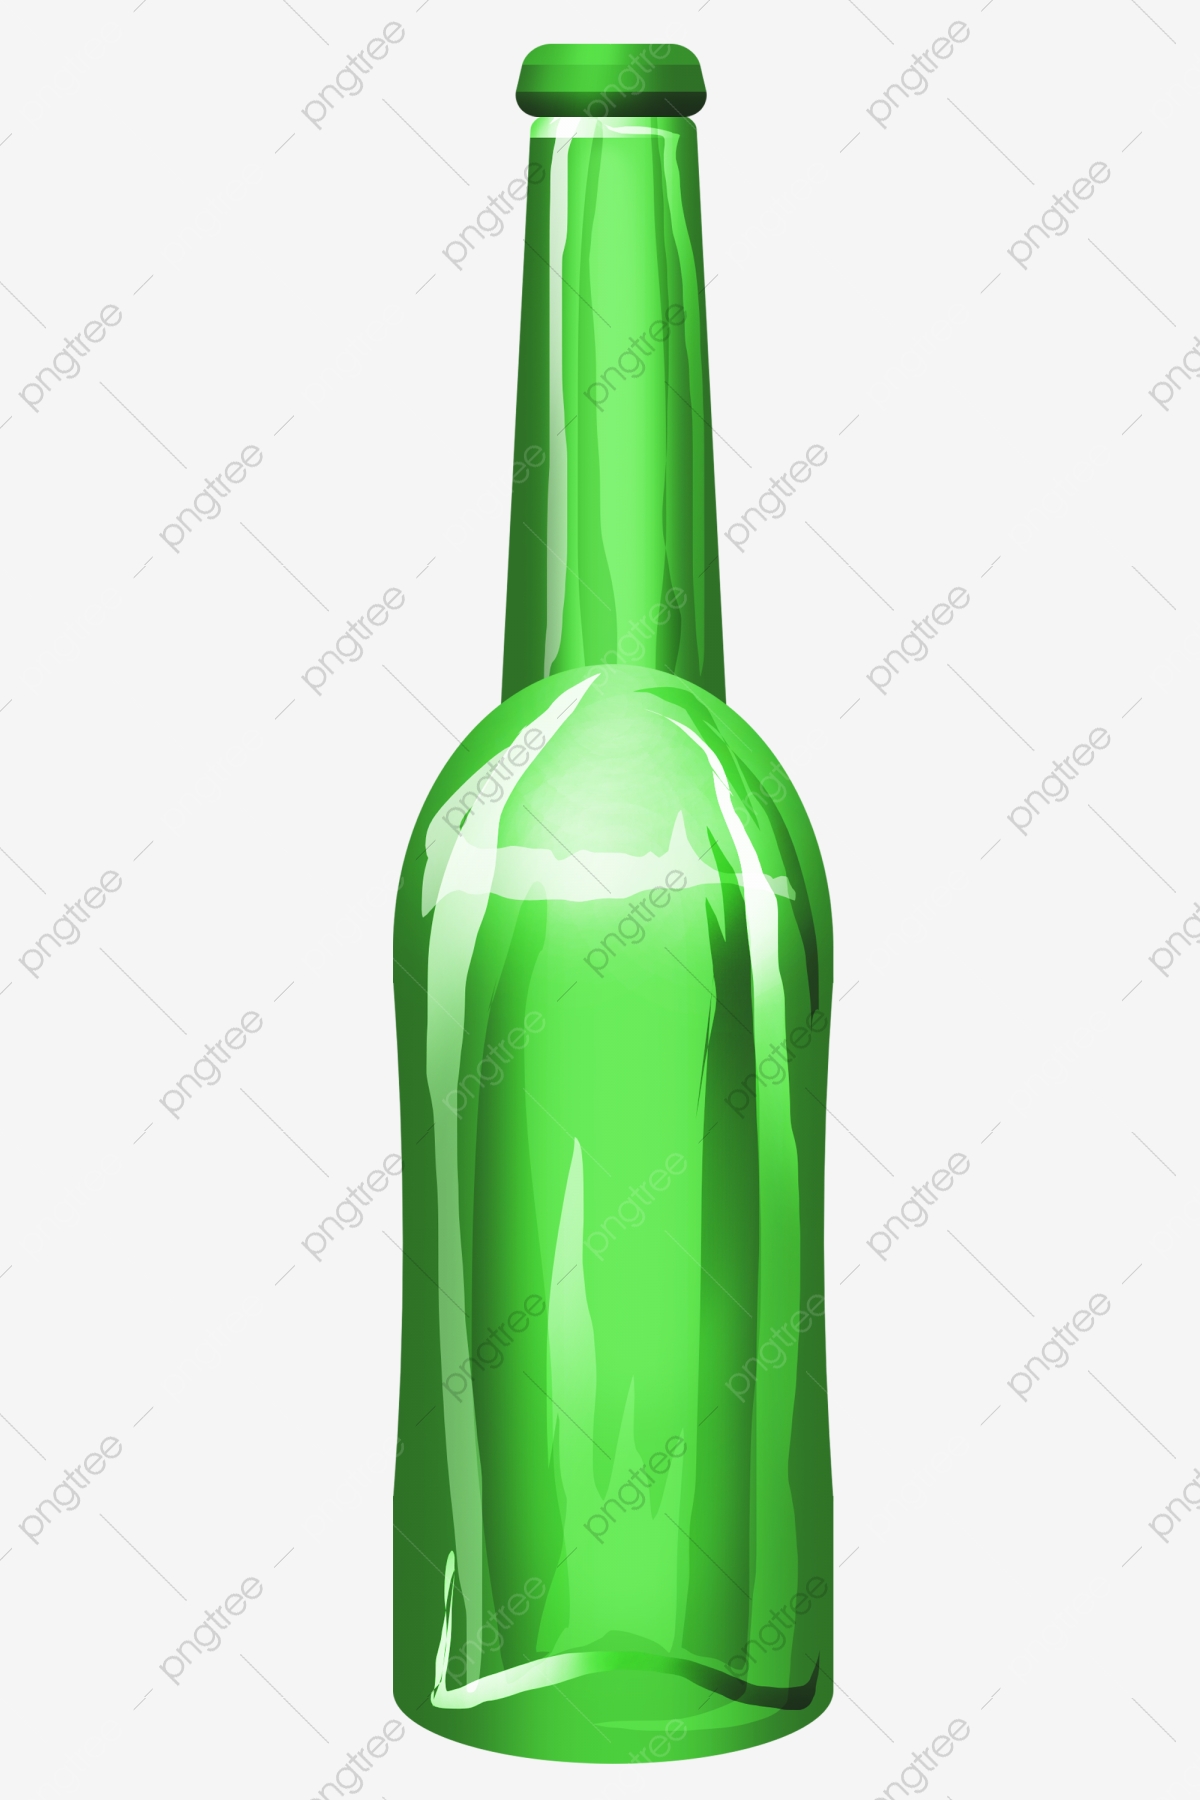 pngtree-blue-glass-bottle-illustration-png-image_4638530.jpg